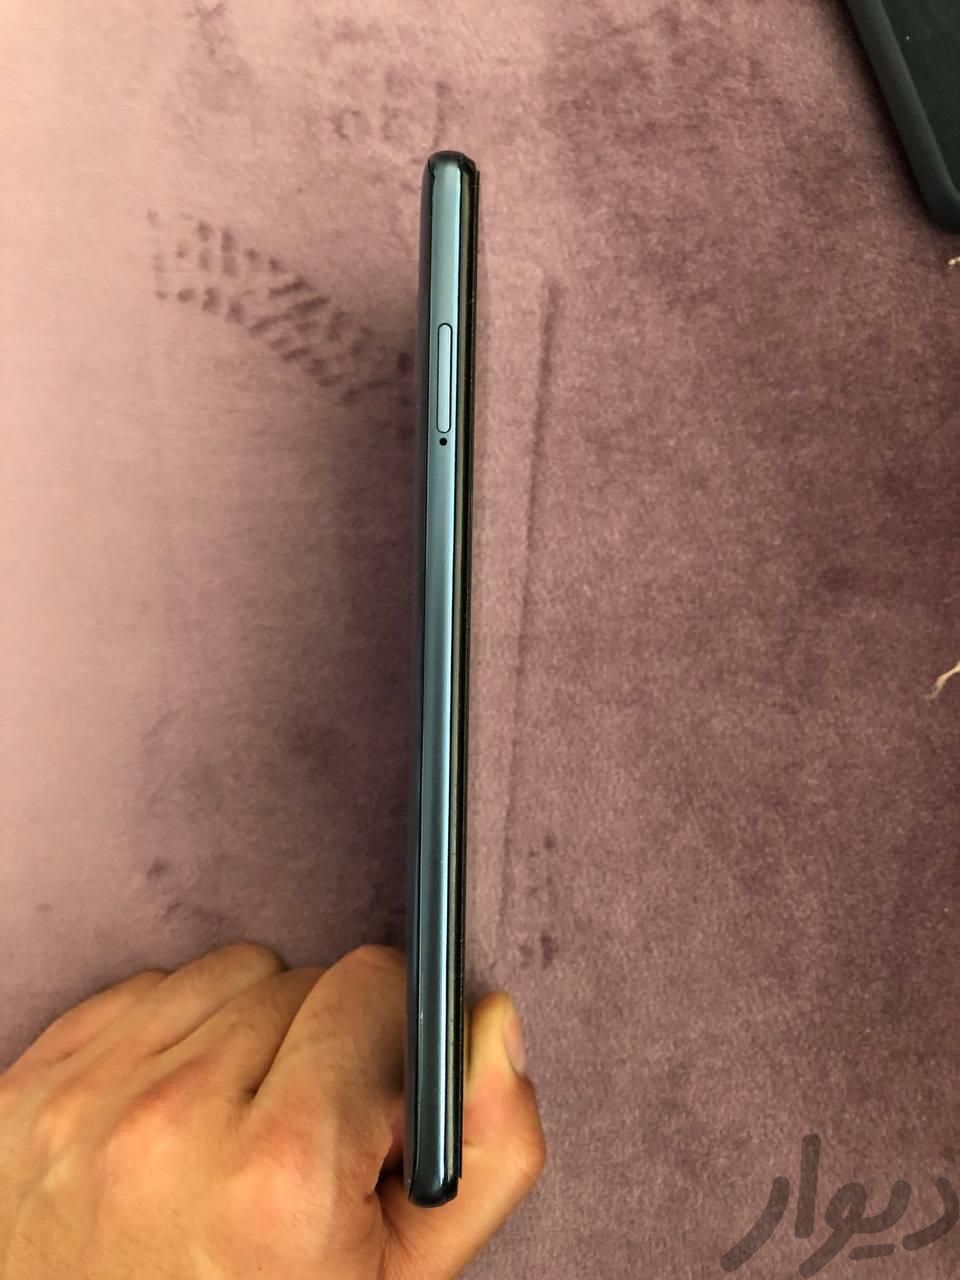 شیائومی Redmi Note 9S ۱۲۸ گیگابایت|موبایل|مشهد, هاشمیه|دیوار